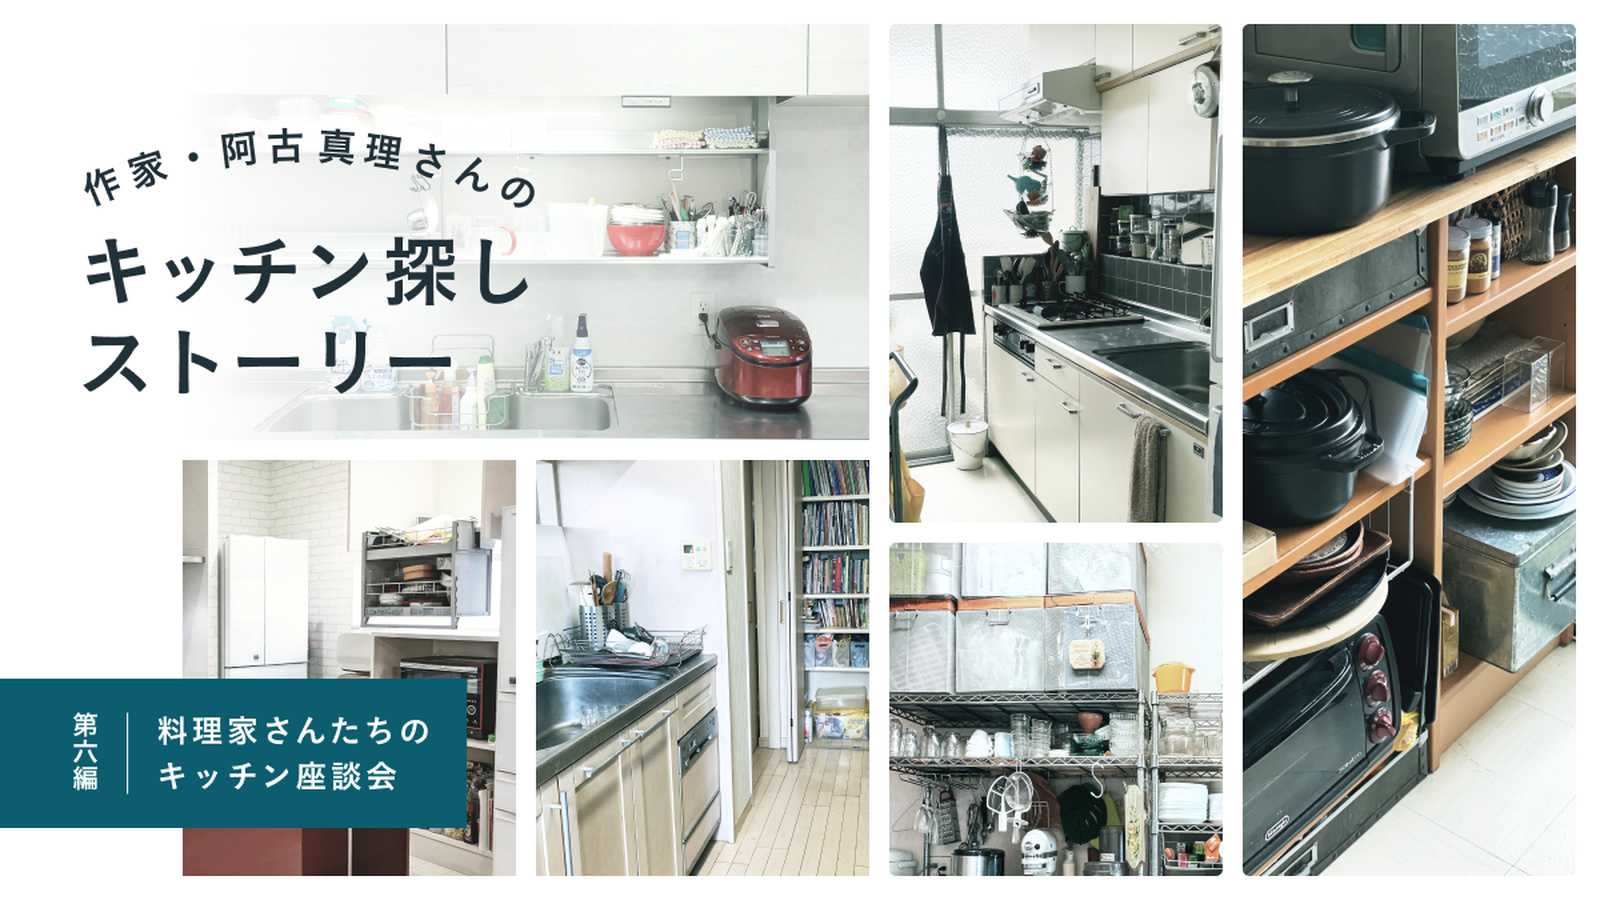 作家・阿古真理さんのキッチン探しストーリー　第六編「料理家さんたちのキッチン座談会」